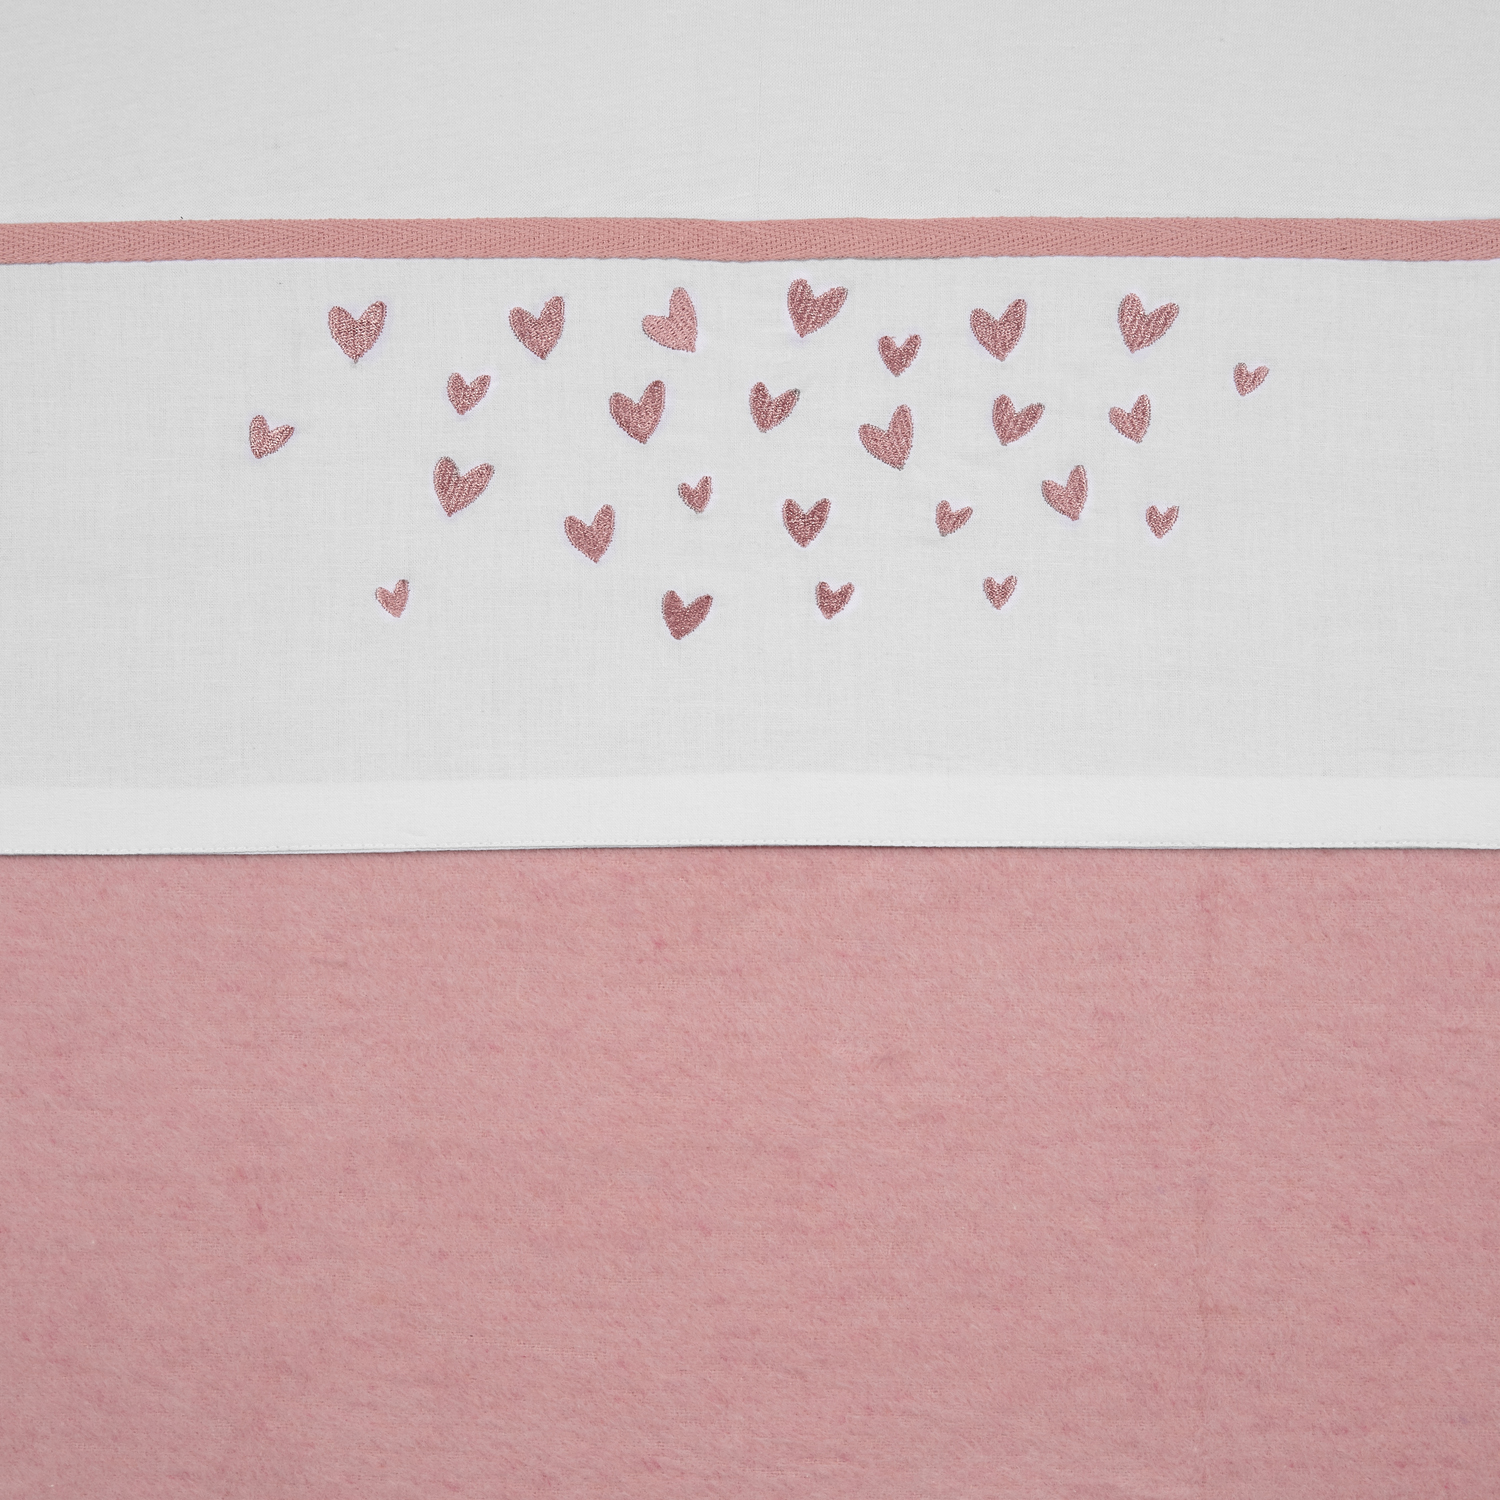 Wieglaken Hearts - old pink - 75x100cm